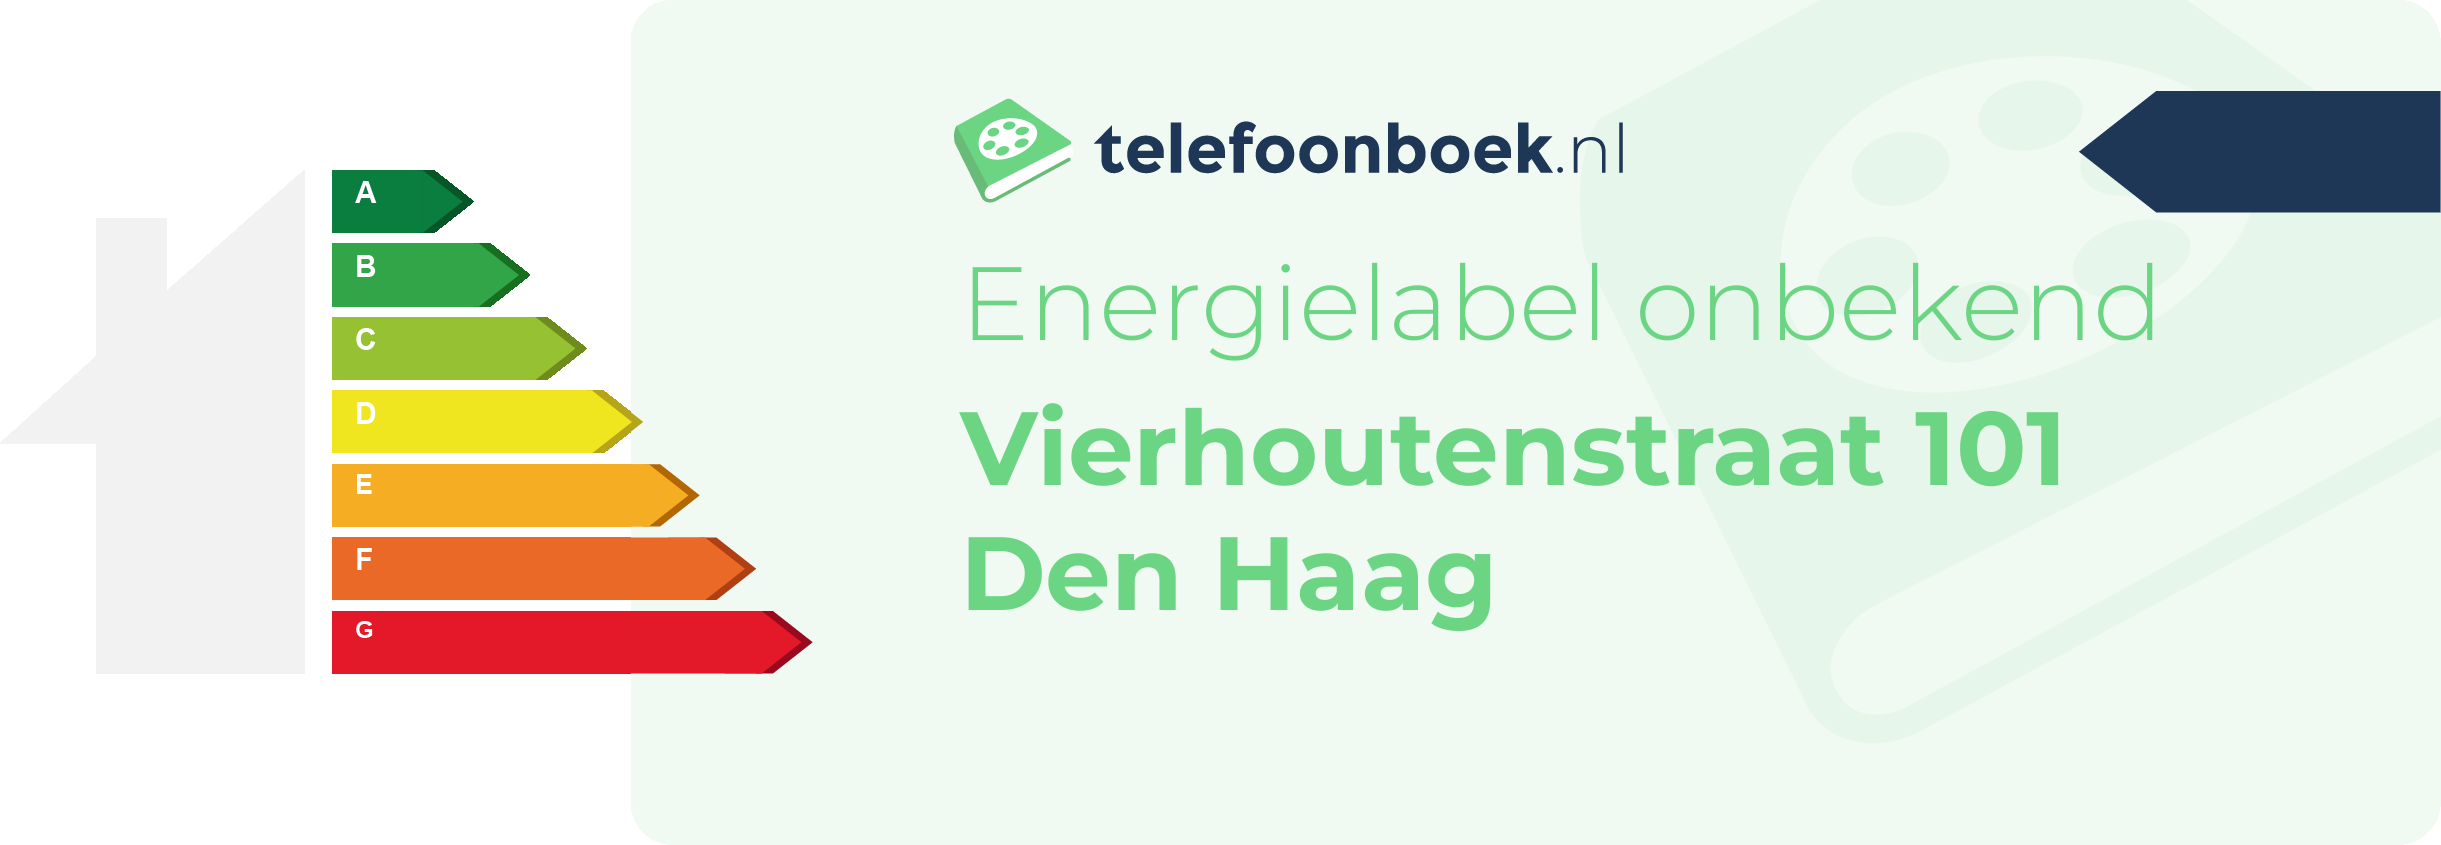 Energielabel Vierhoutenstraat 101 Den Haag